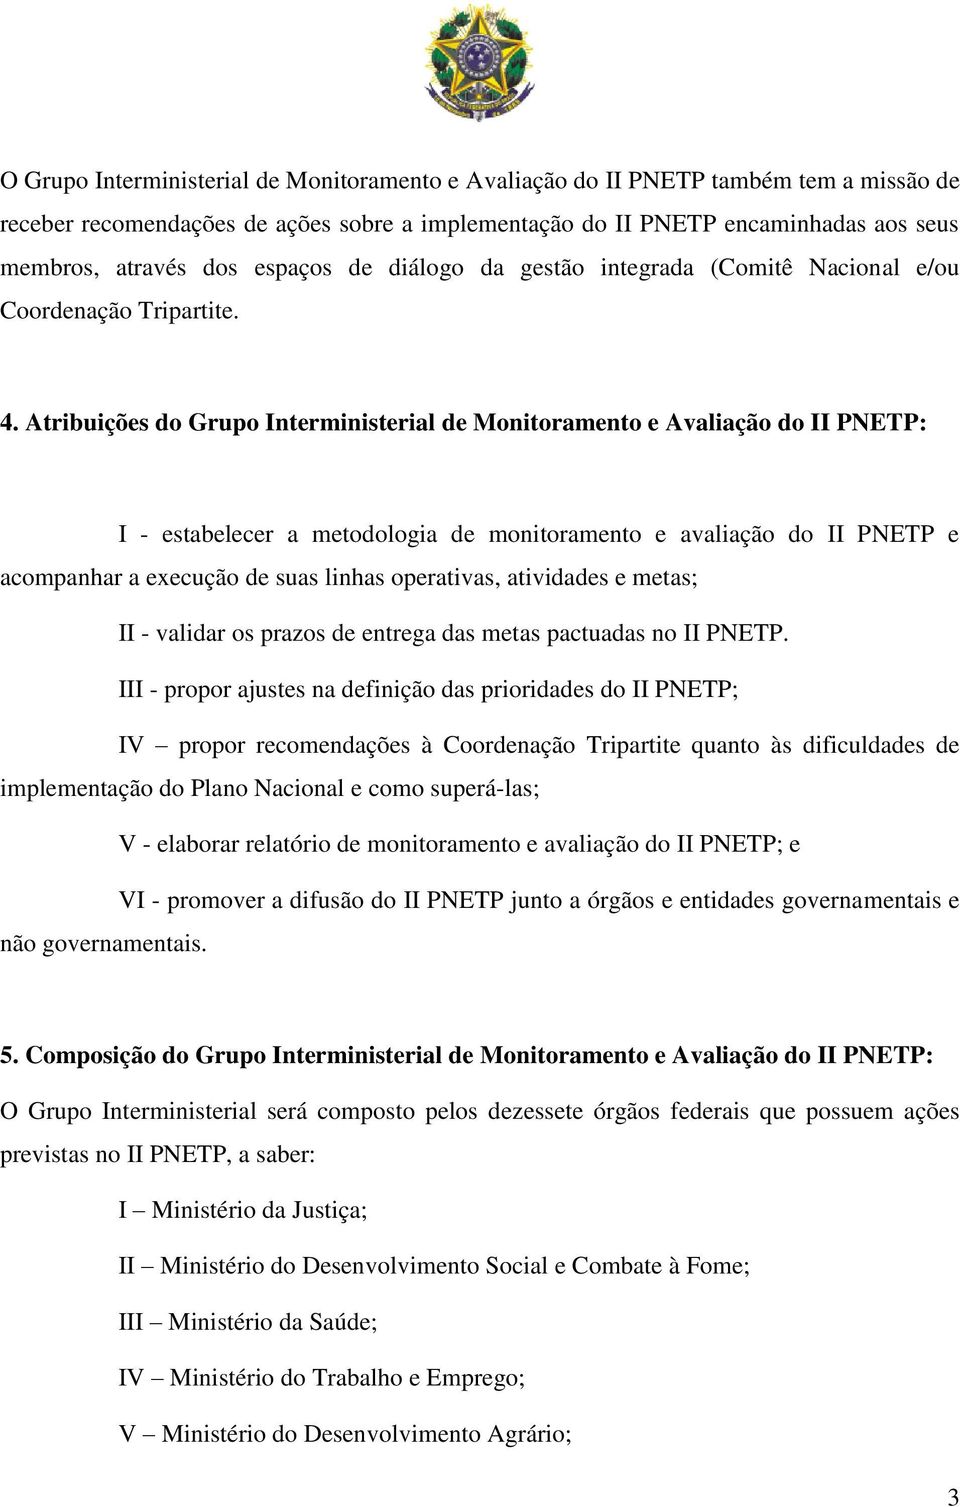 Atribuições do Grupo Interministerial de Monitoramento e Avaliação do II PNETP: I - estabelecer a metodologia de monitoramento e avaliação do II PNETP e acompanhar a execução de suas linhas